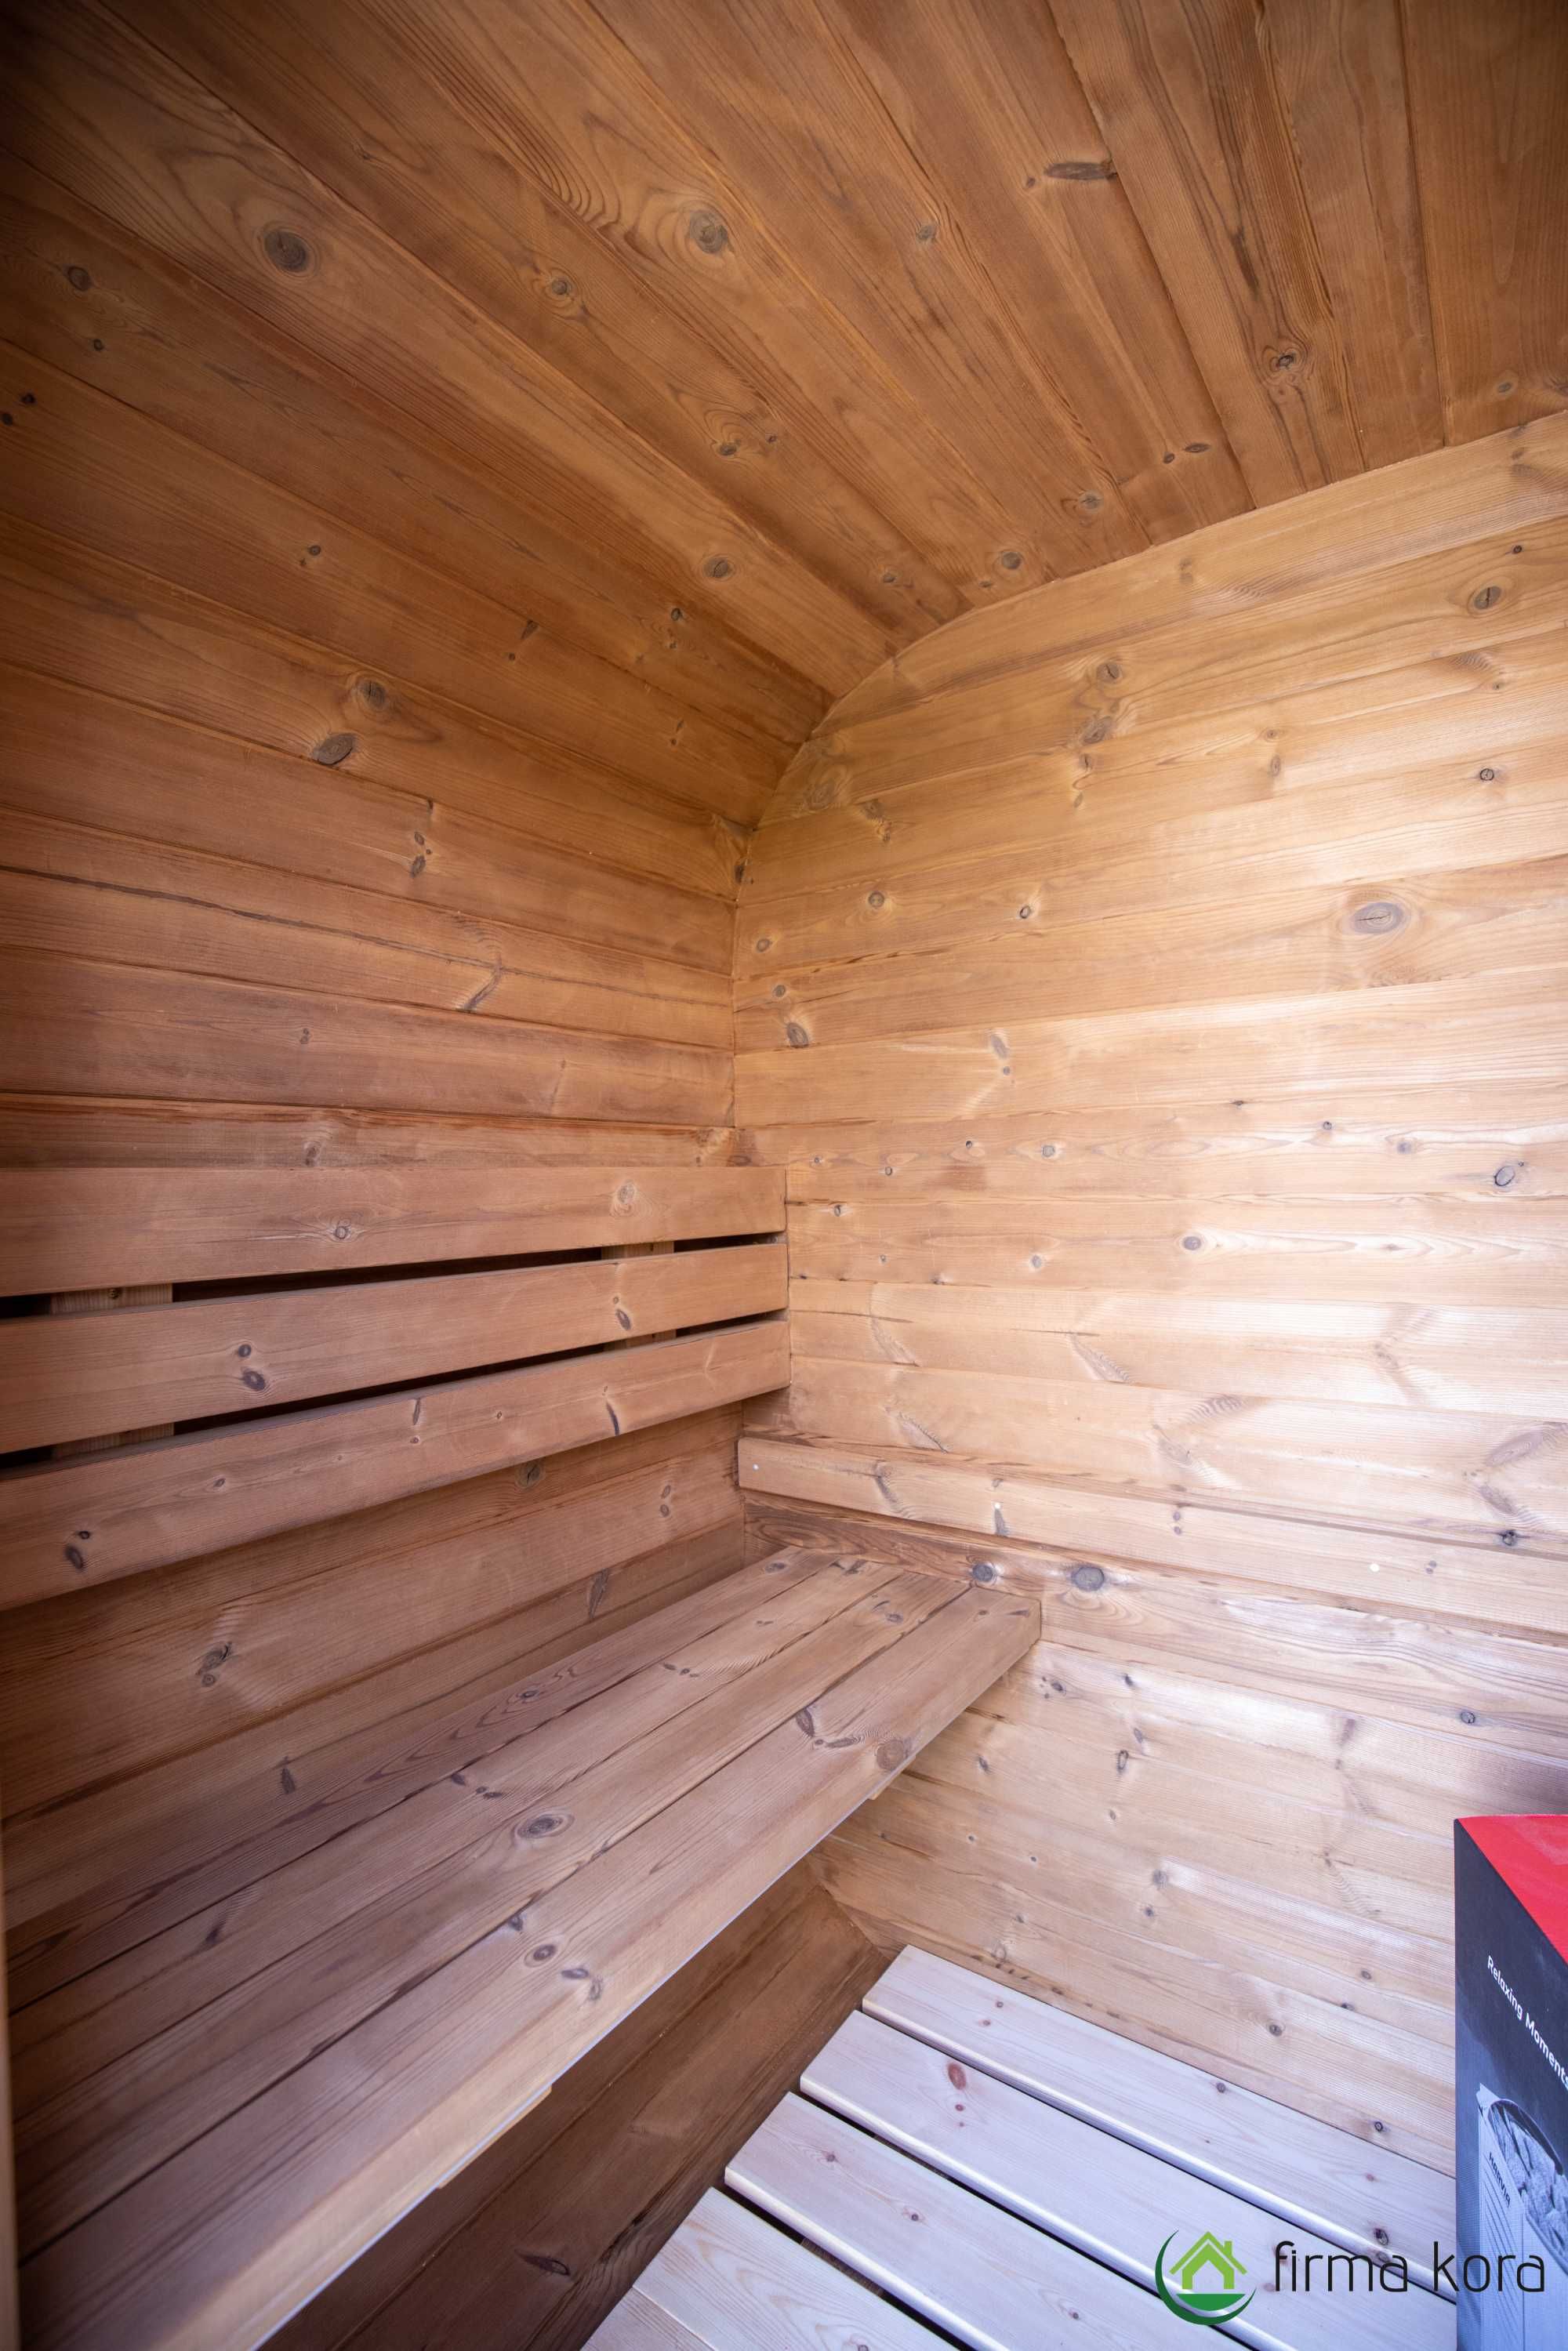 Kompletny zestaw SPA sauna z piecem +beczka do schładzania PROMOCJA